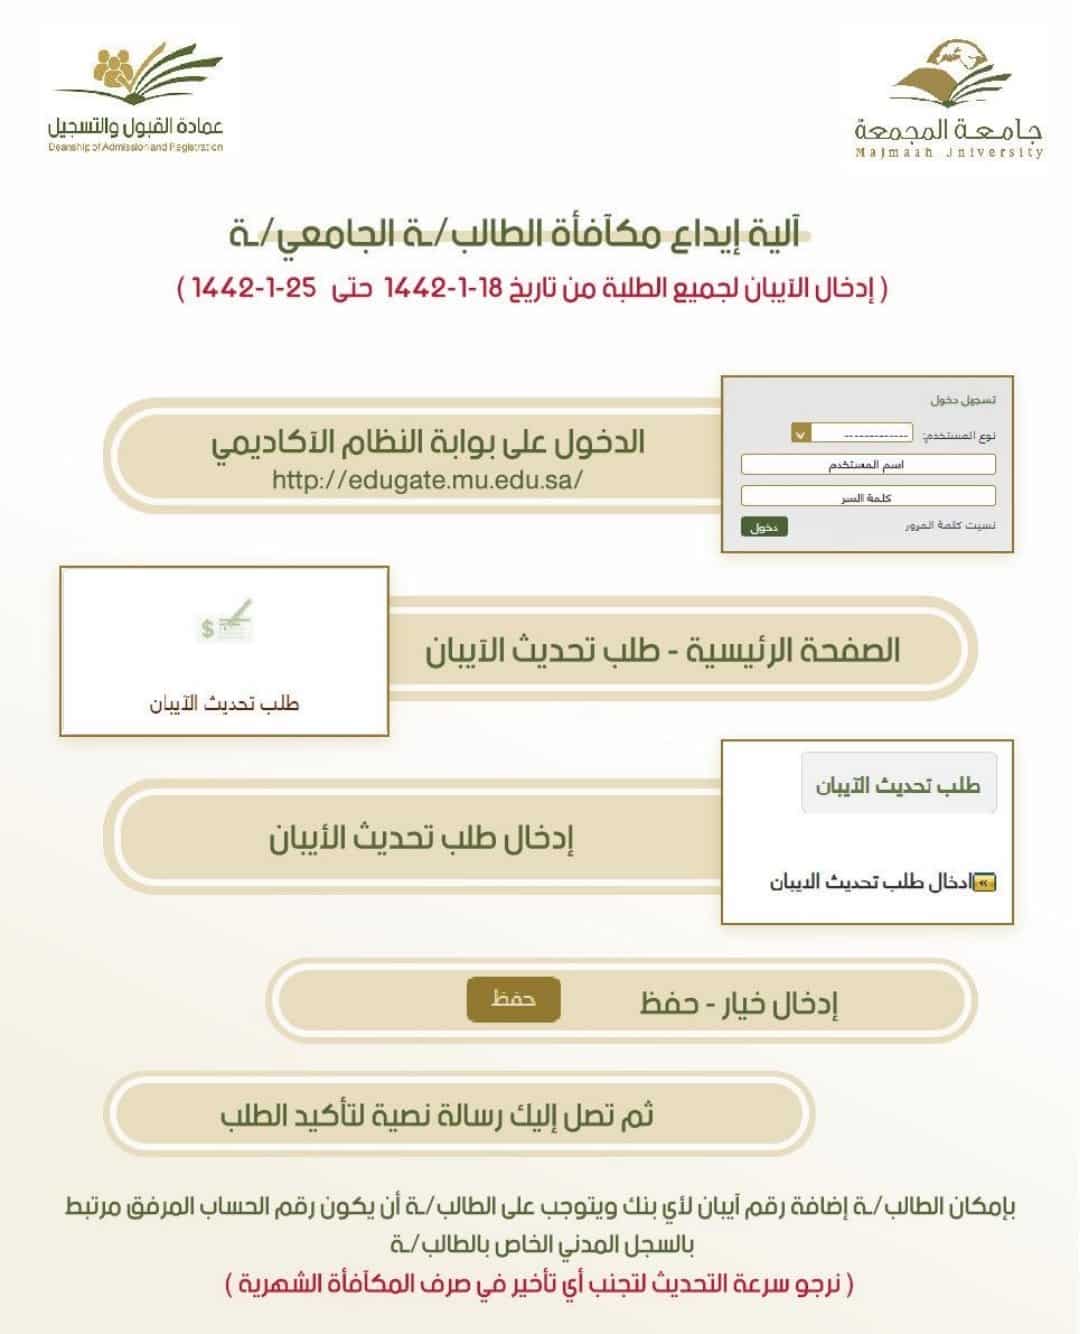 جامعة المجمعة تودع مكافآت الطلاب في حساباتهم الشخصية صحيفة المواطن الإلكترونية